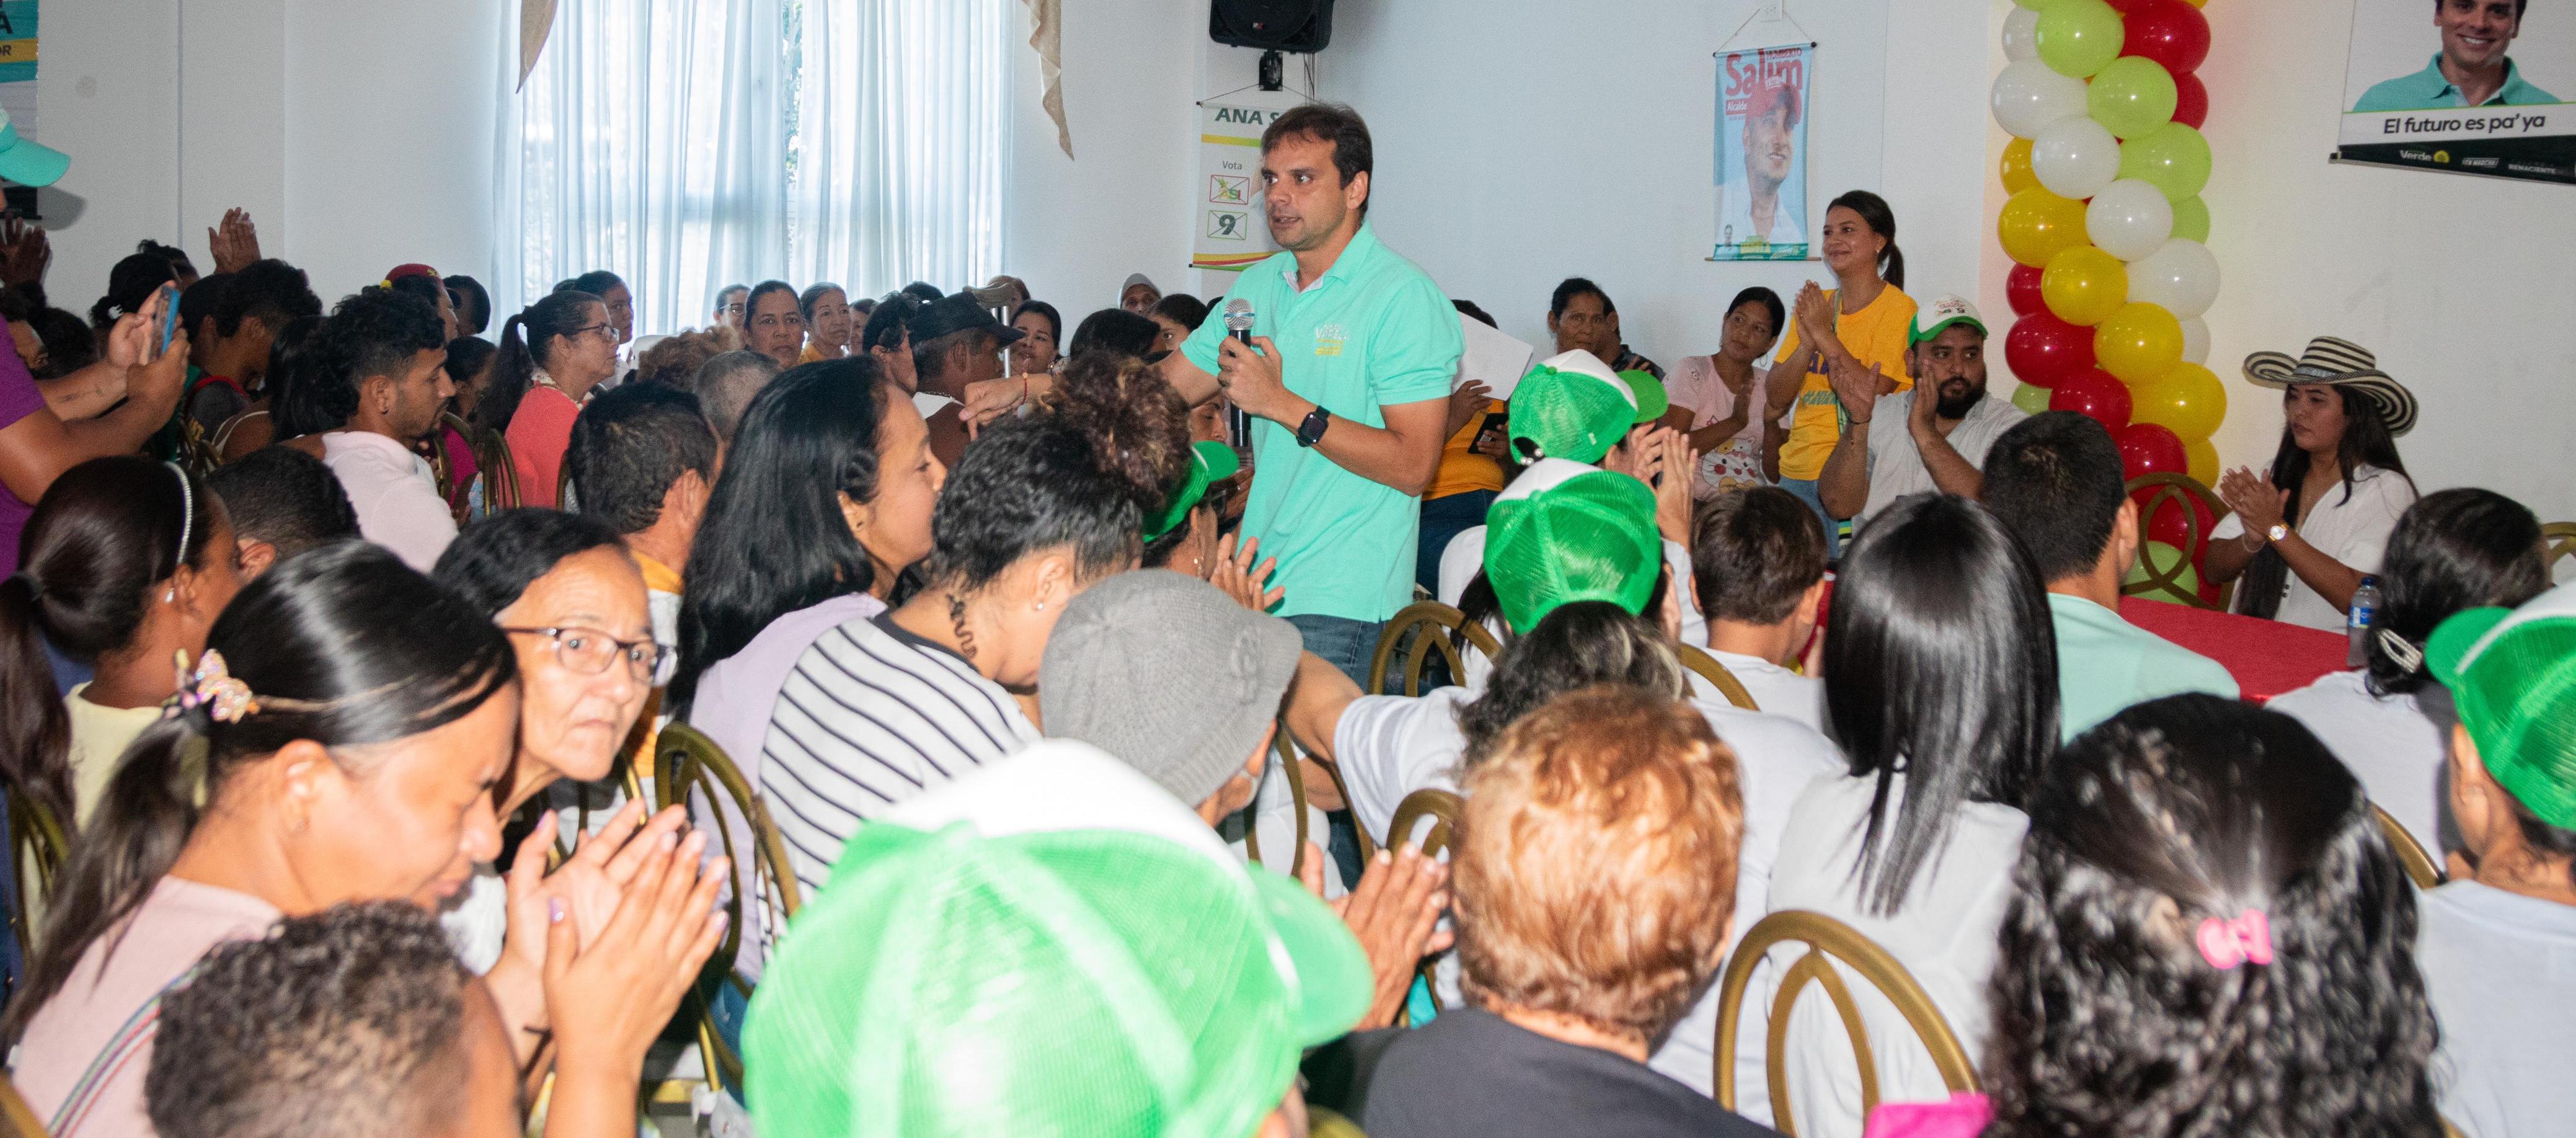 El candidato a la Gobernación Alfredo Varela en la reunión que presidió en Palmar de Varela